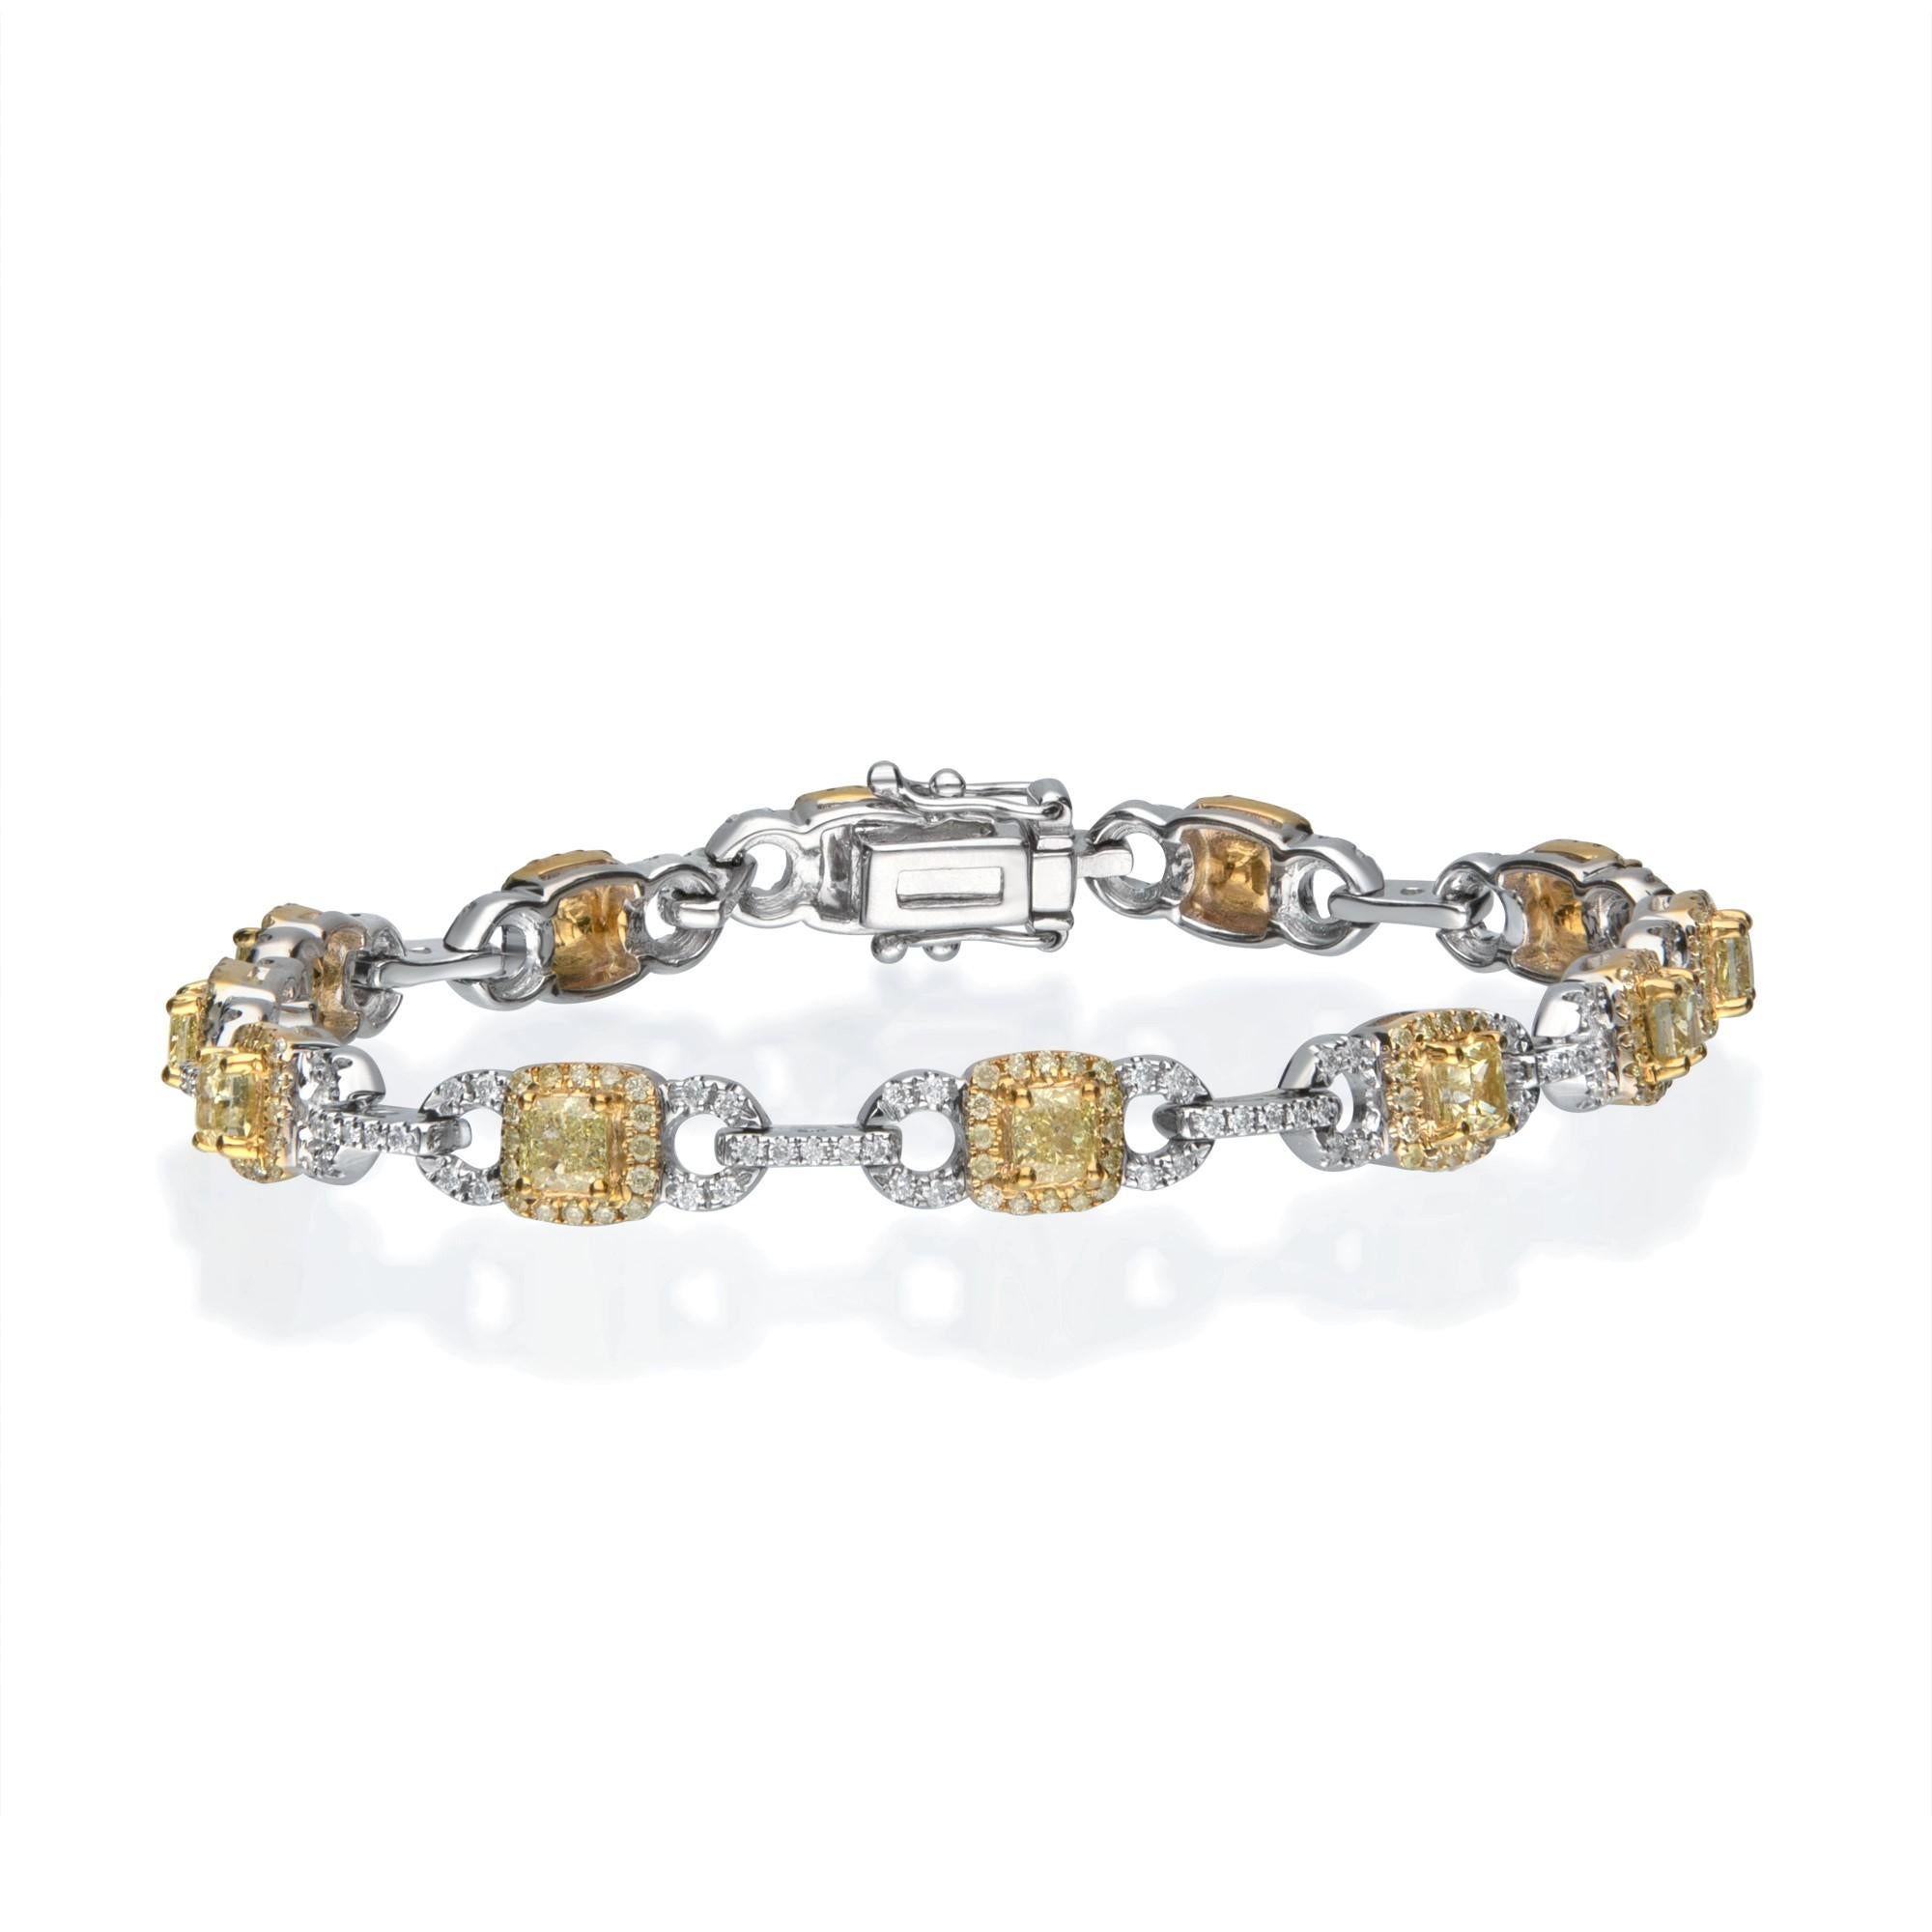 Faites preuve d'élégance avec ce bracelet en or bicolore 14 carats de Gin and Grace. Ce bracelet est composé de diamants blancs de taille ronde (348 pièces) de 1,30 carat, de diamants jaunes (12 pièces) de 1,86 carat. Ce bracelet pèse 13,28 grammes.